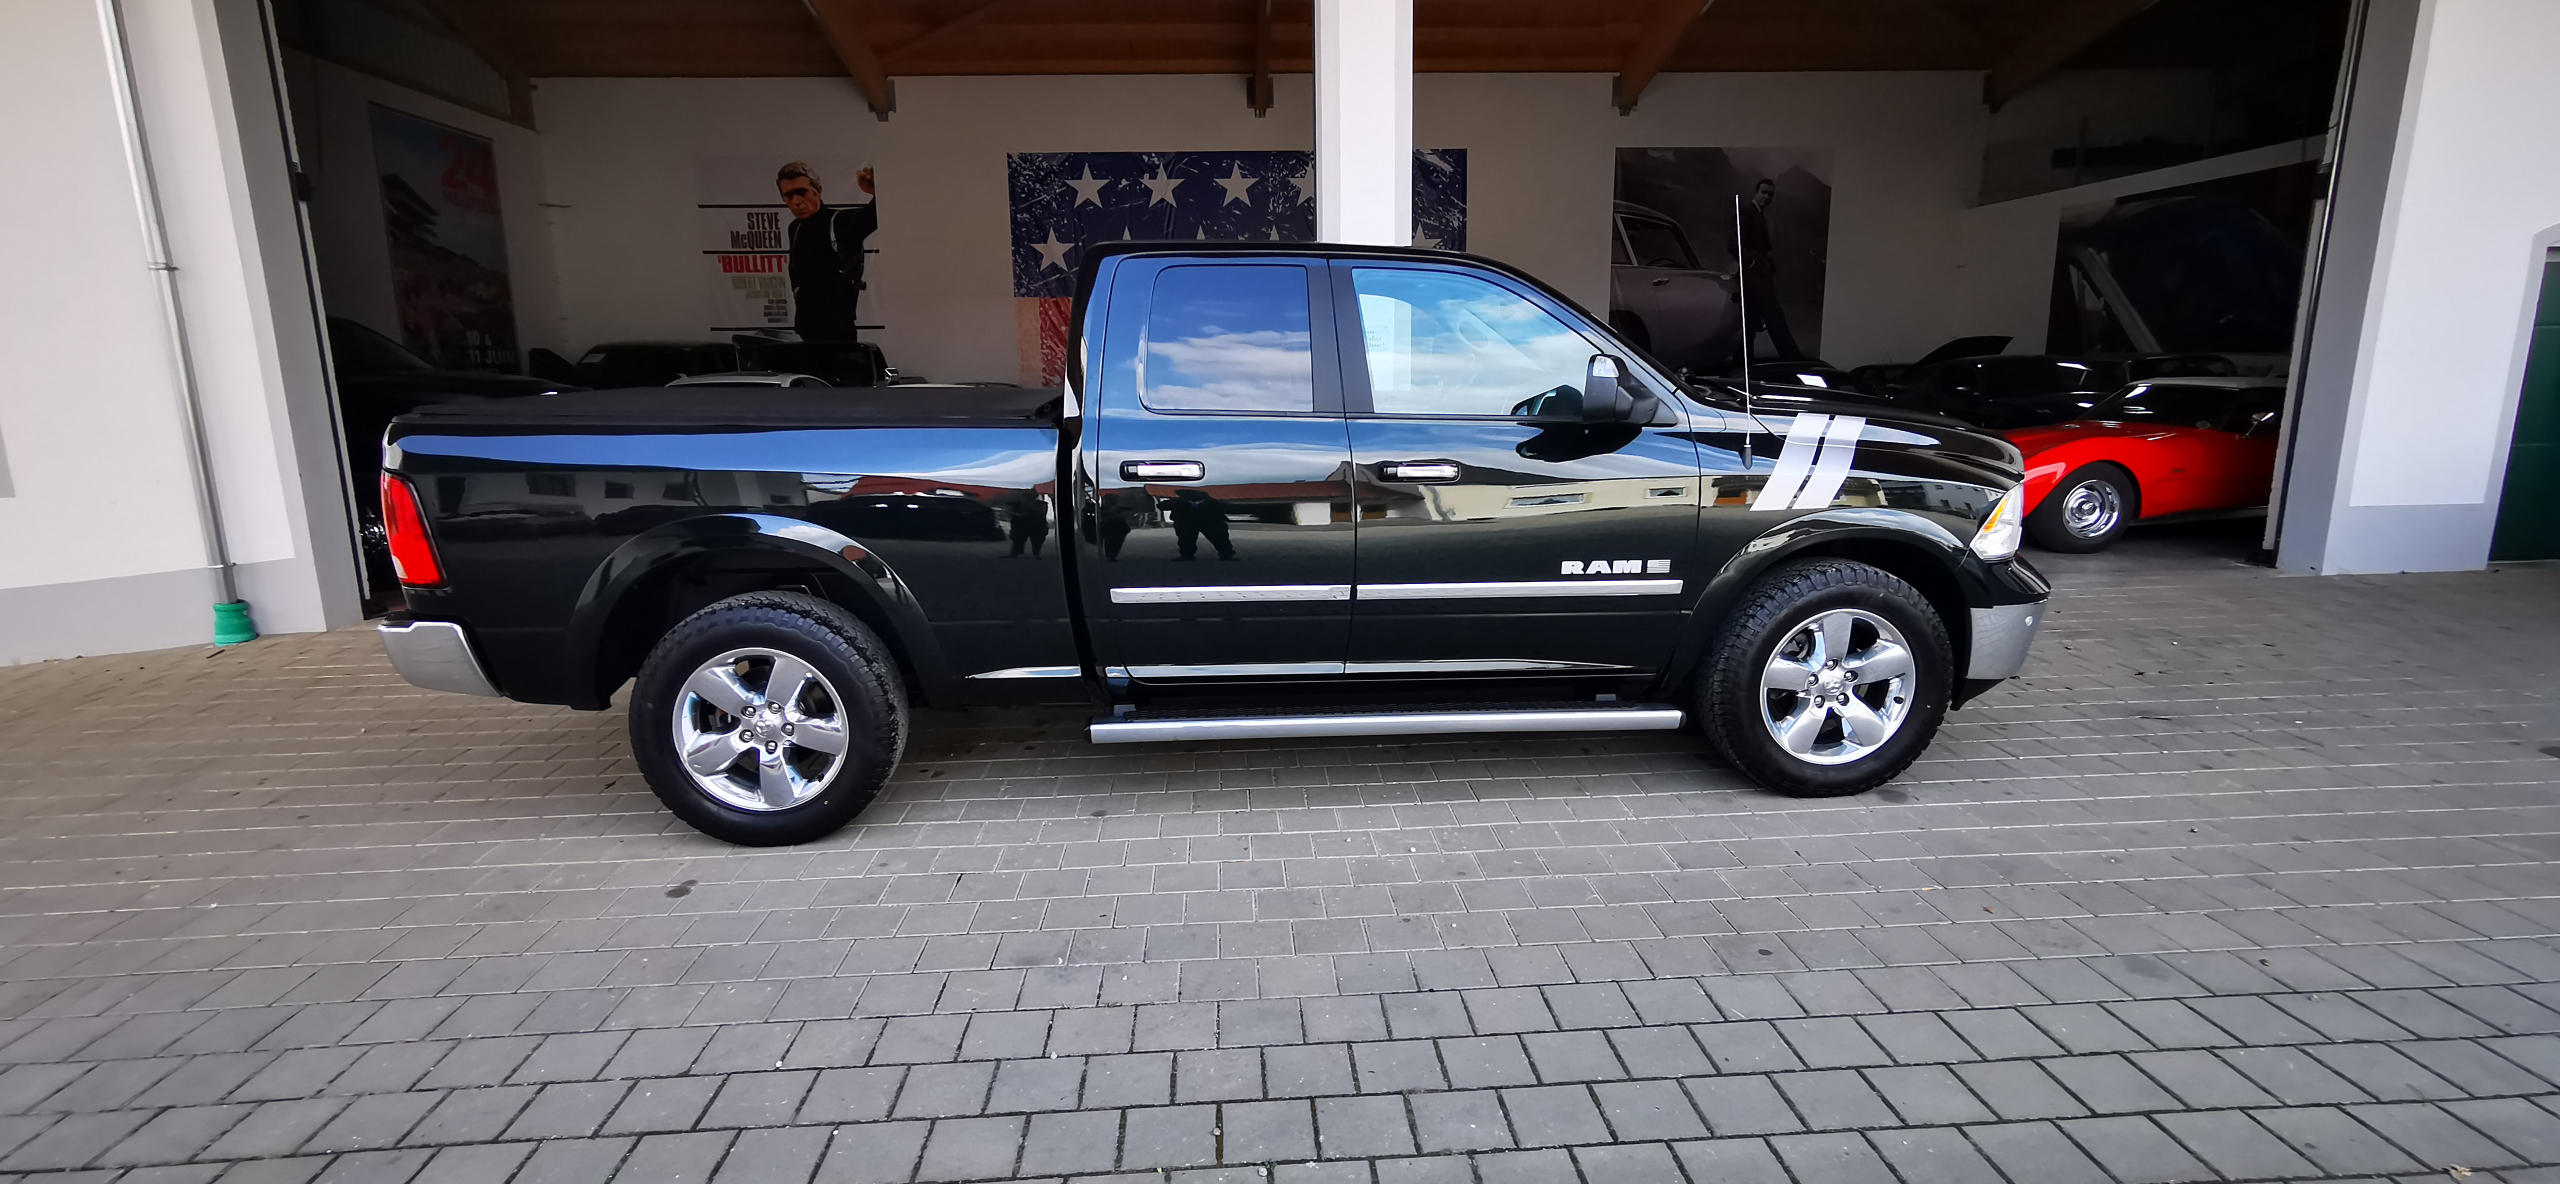 2017 Dodge Ram 1500 BigHorn Quad Cab zu verkaufen Klagenfurt